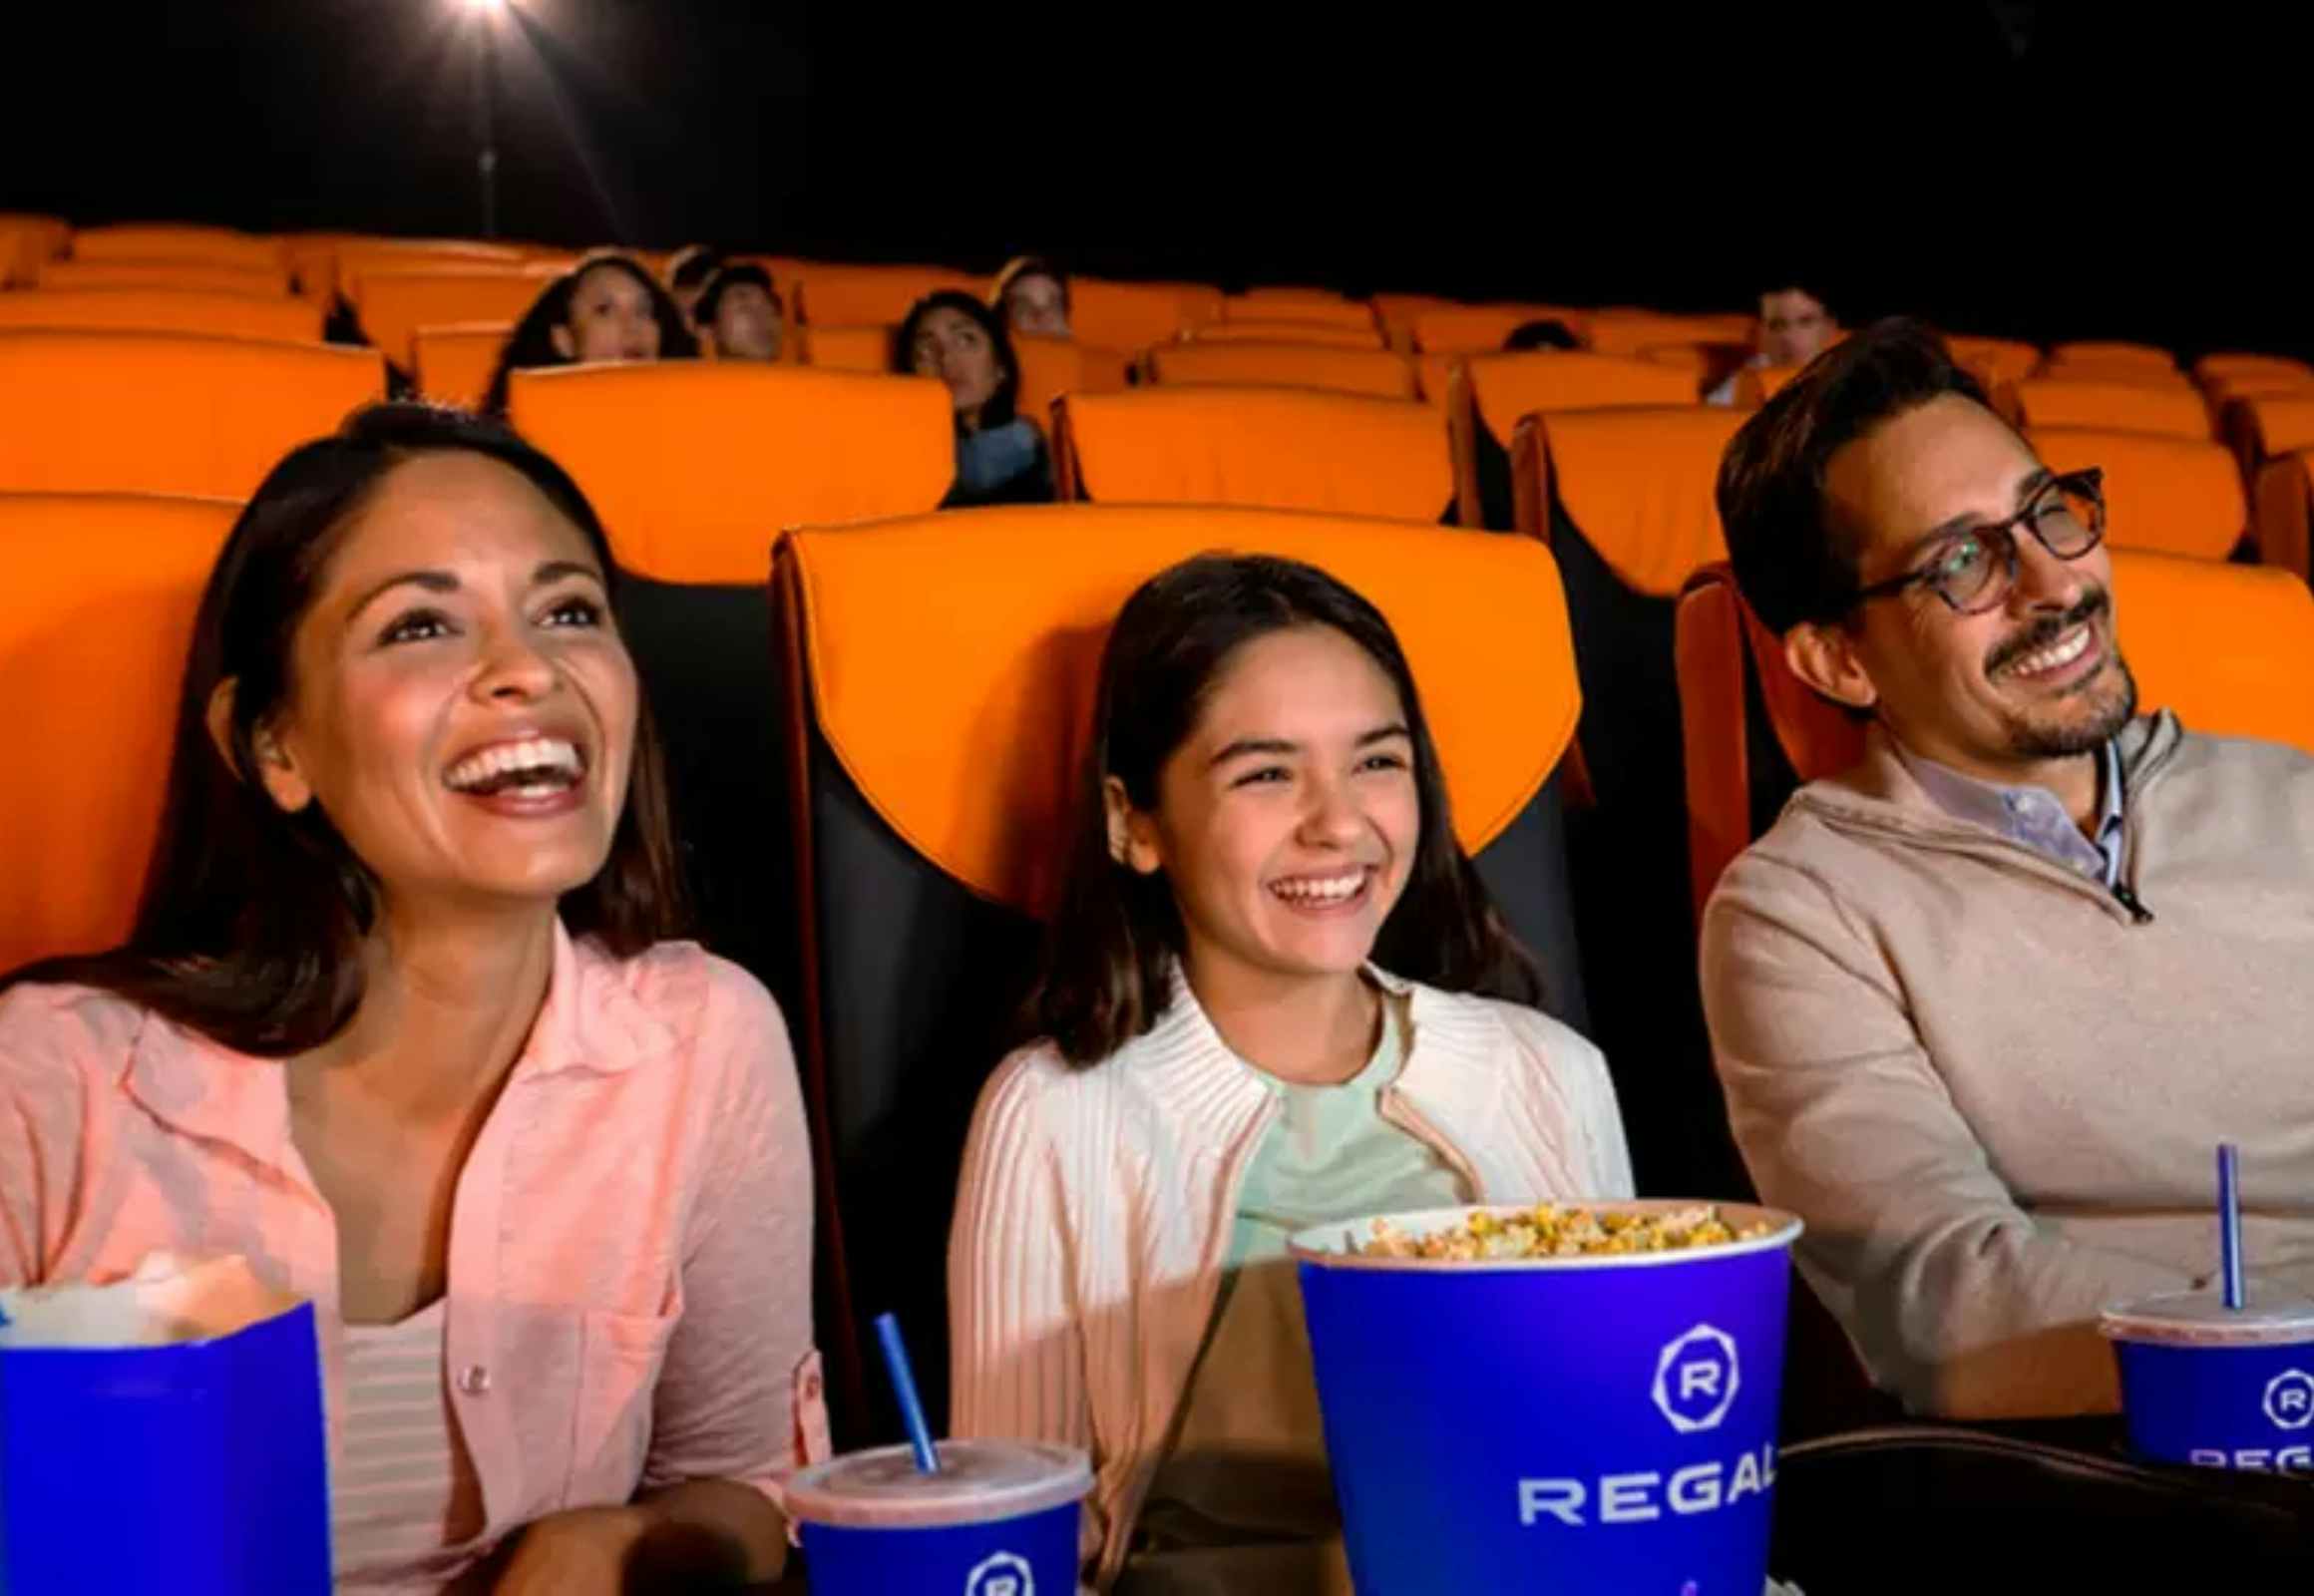 Movie Ticket Deals: $2 Saturday Morning Kids Flicks at Regal Cinemas